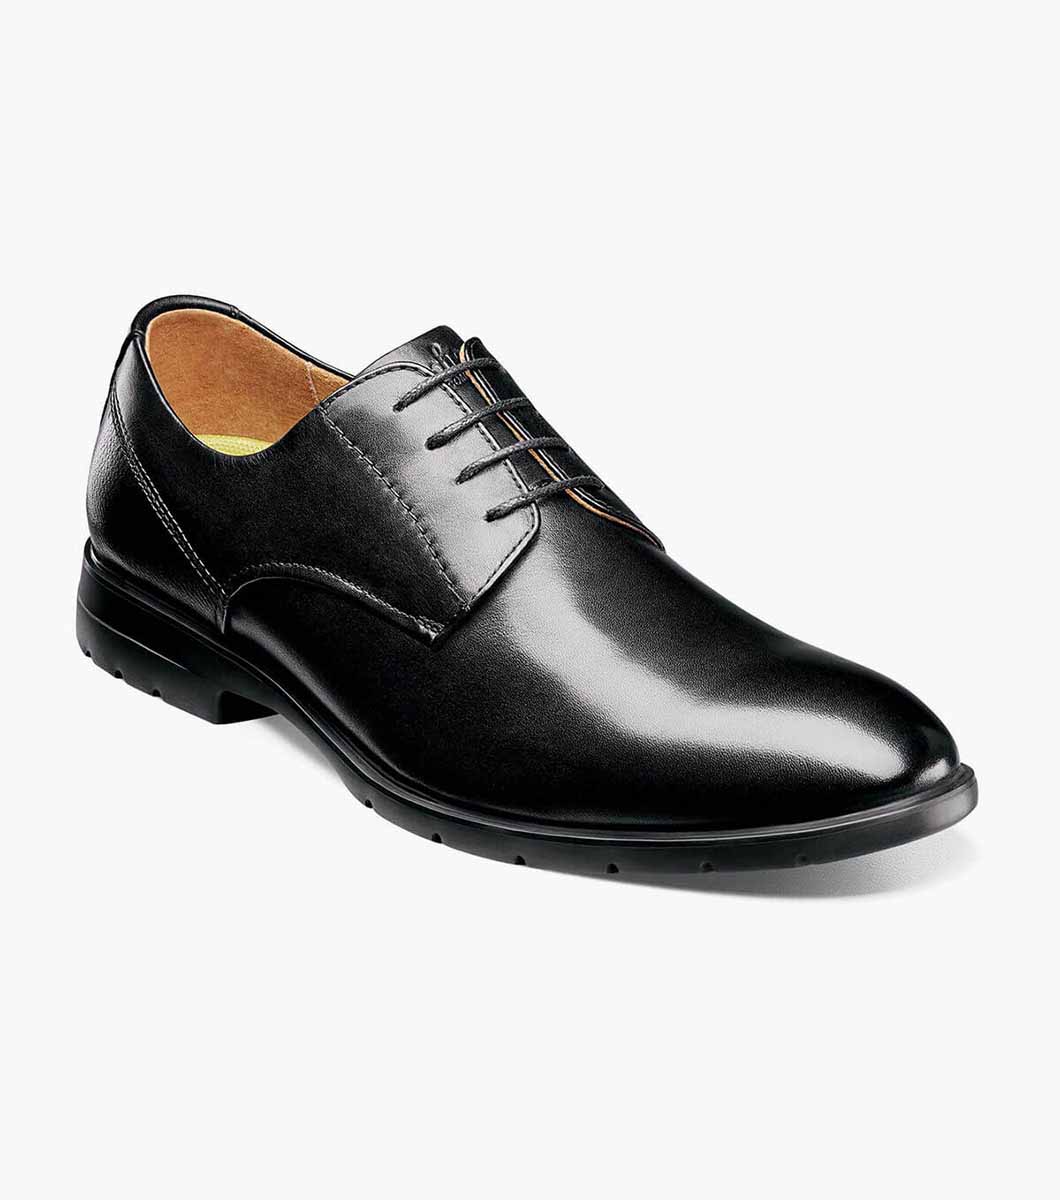 Westside Plain Toe Oxford Men’s Dress Shoes | Florsheim.com